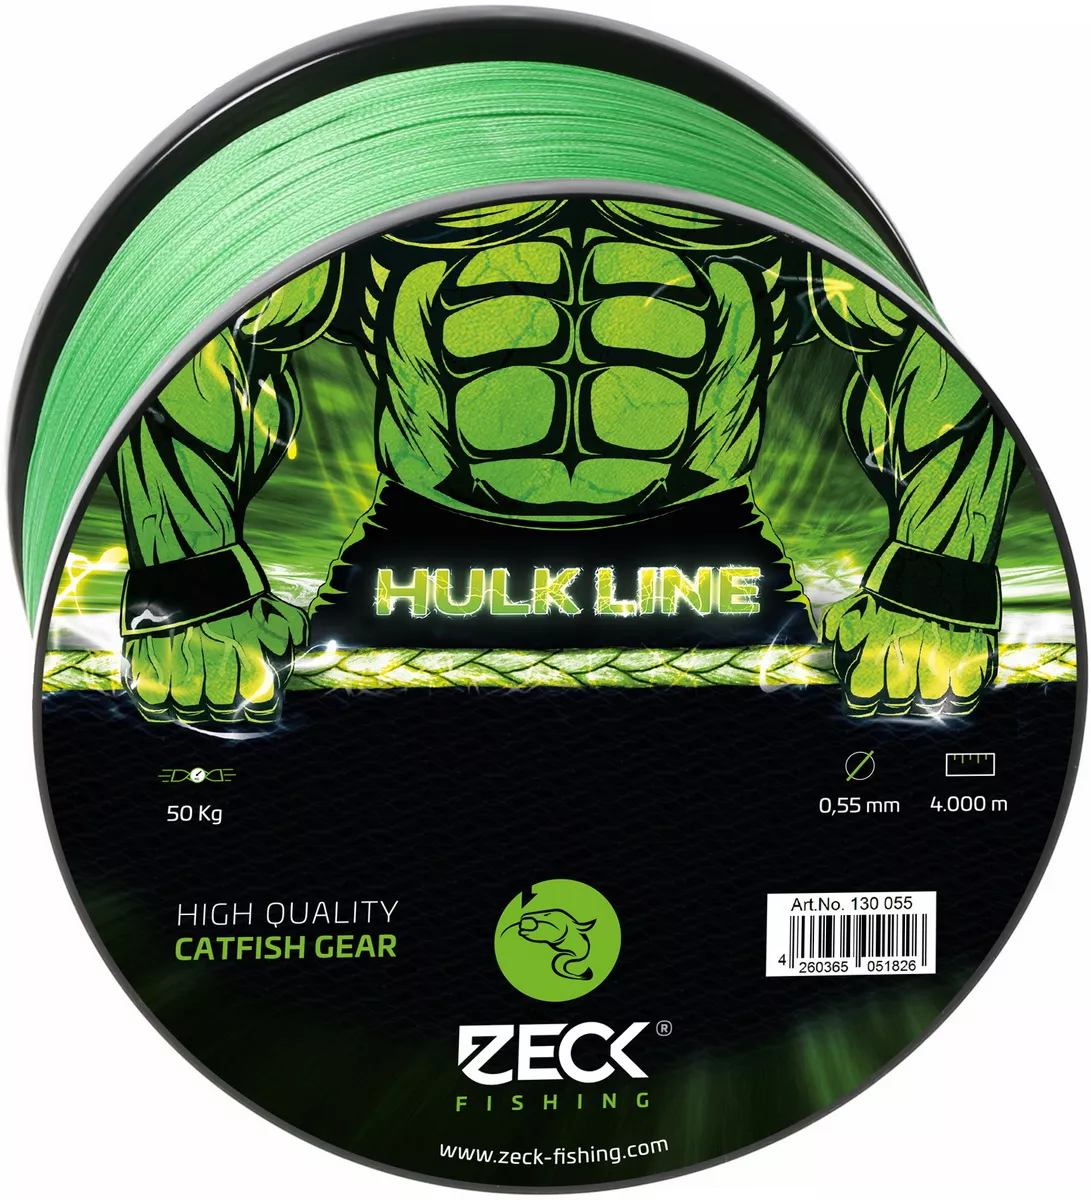 ZECK FISHING Hulk Line 0,55mm 4000m, geflochtene Angelschnur, braided line